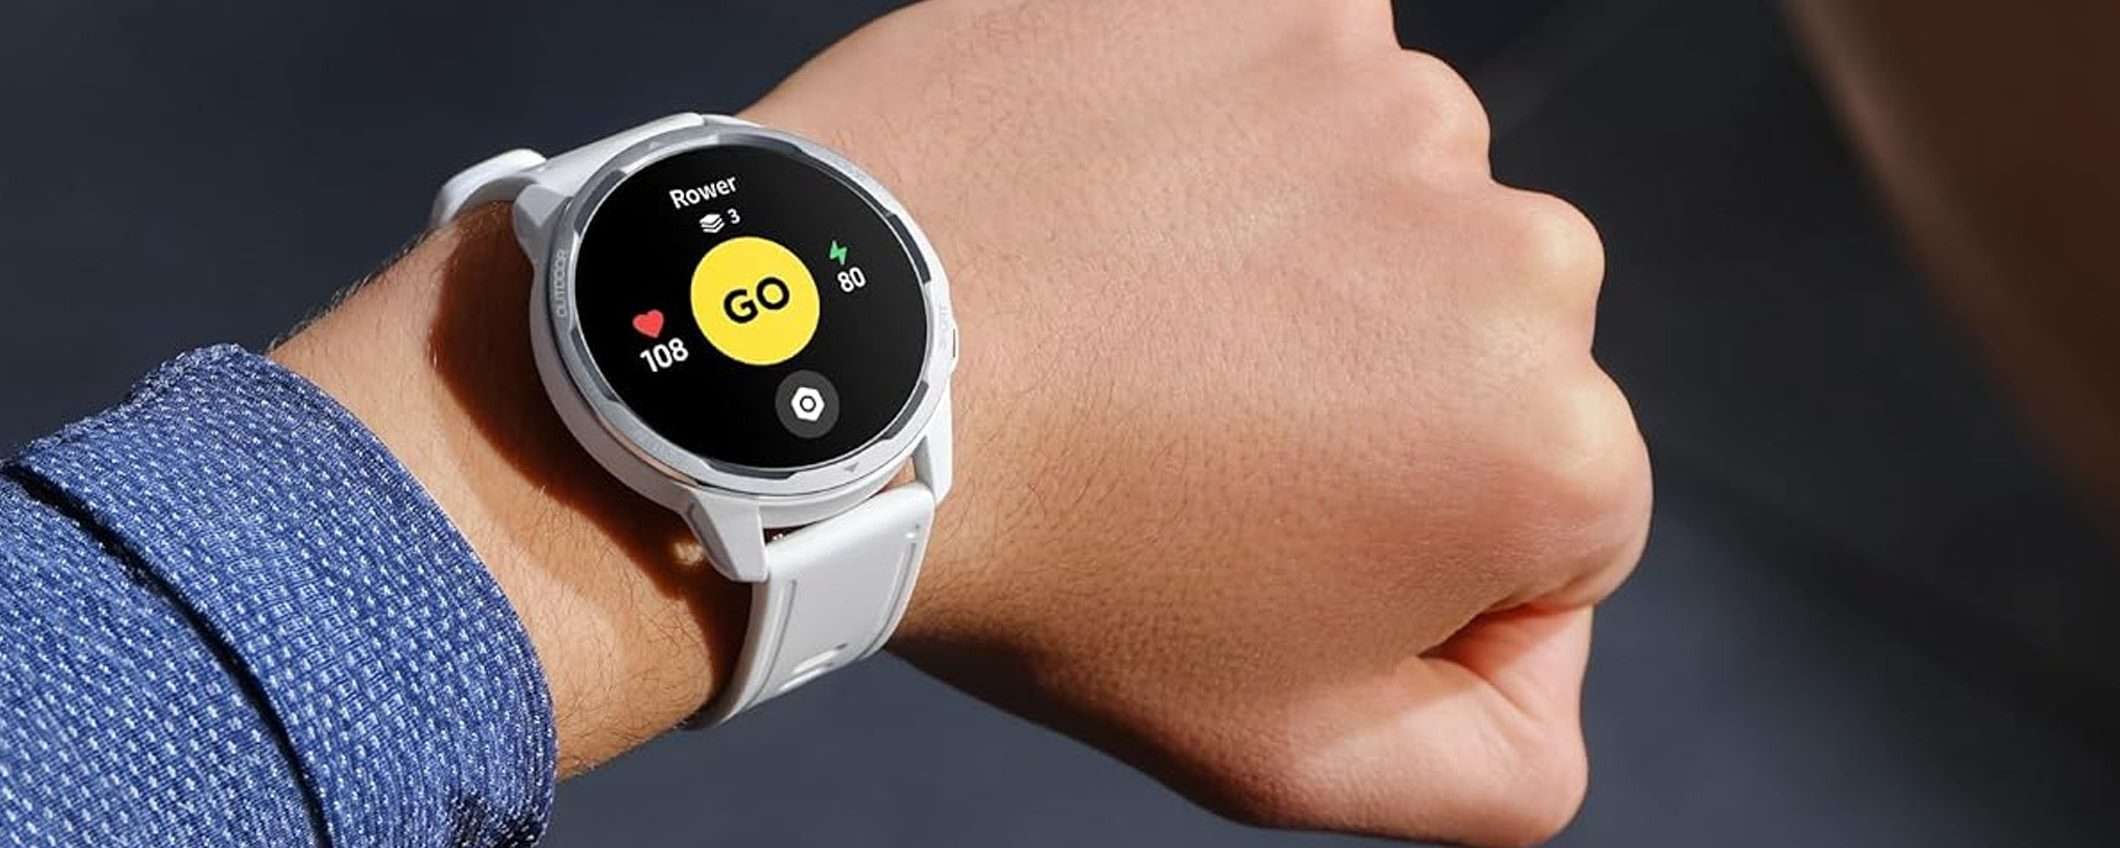 Xiaomi Watch S1 Active a meno di metà prezzo: l'AFFARE